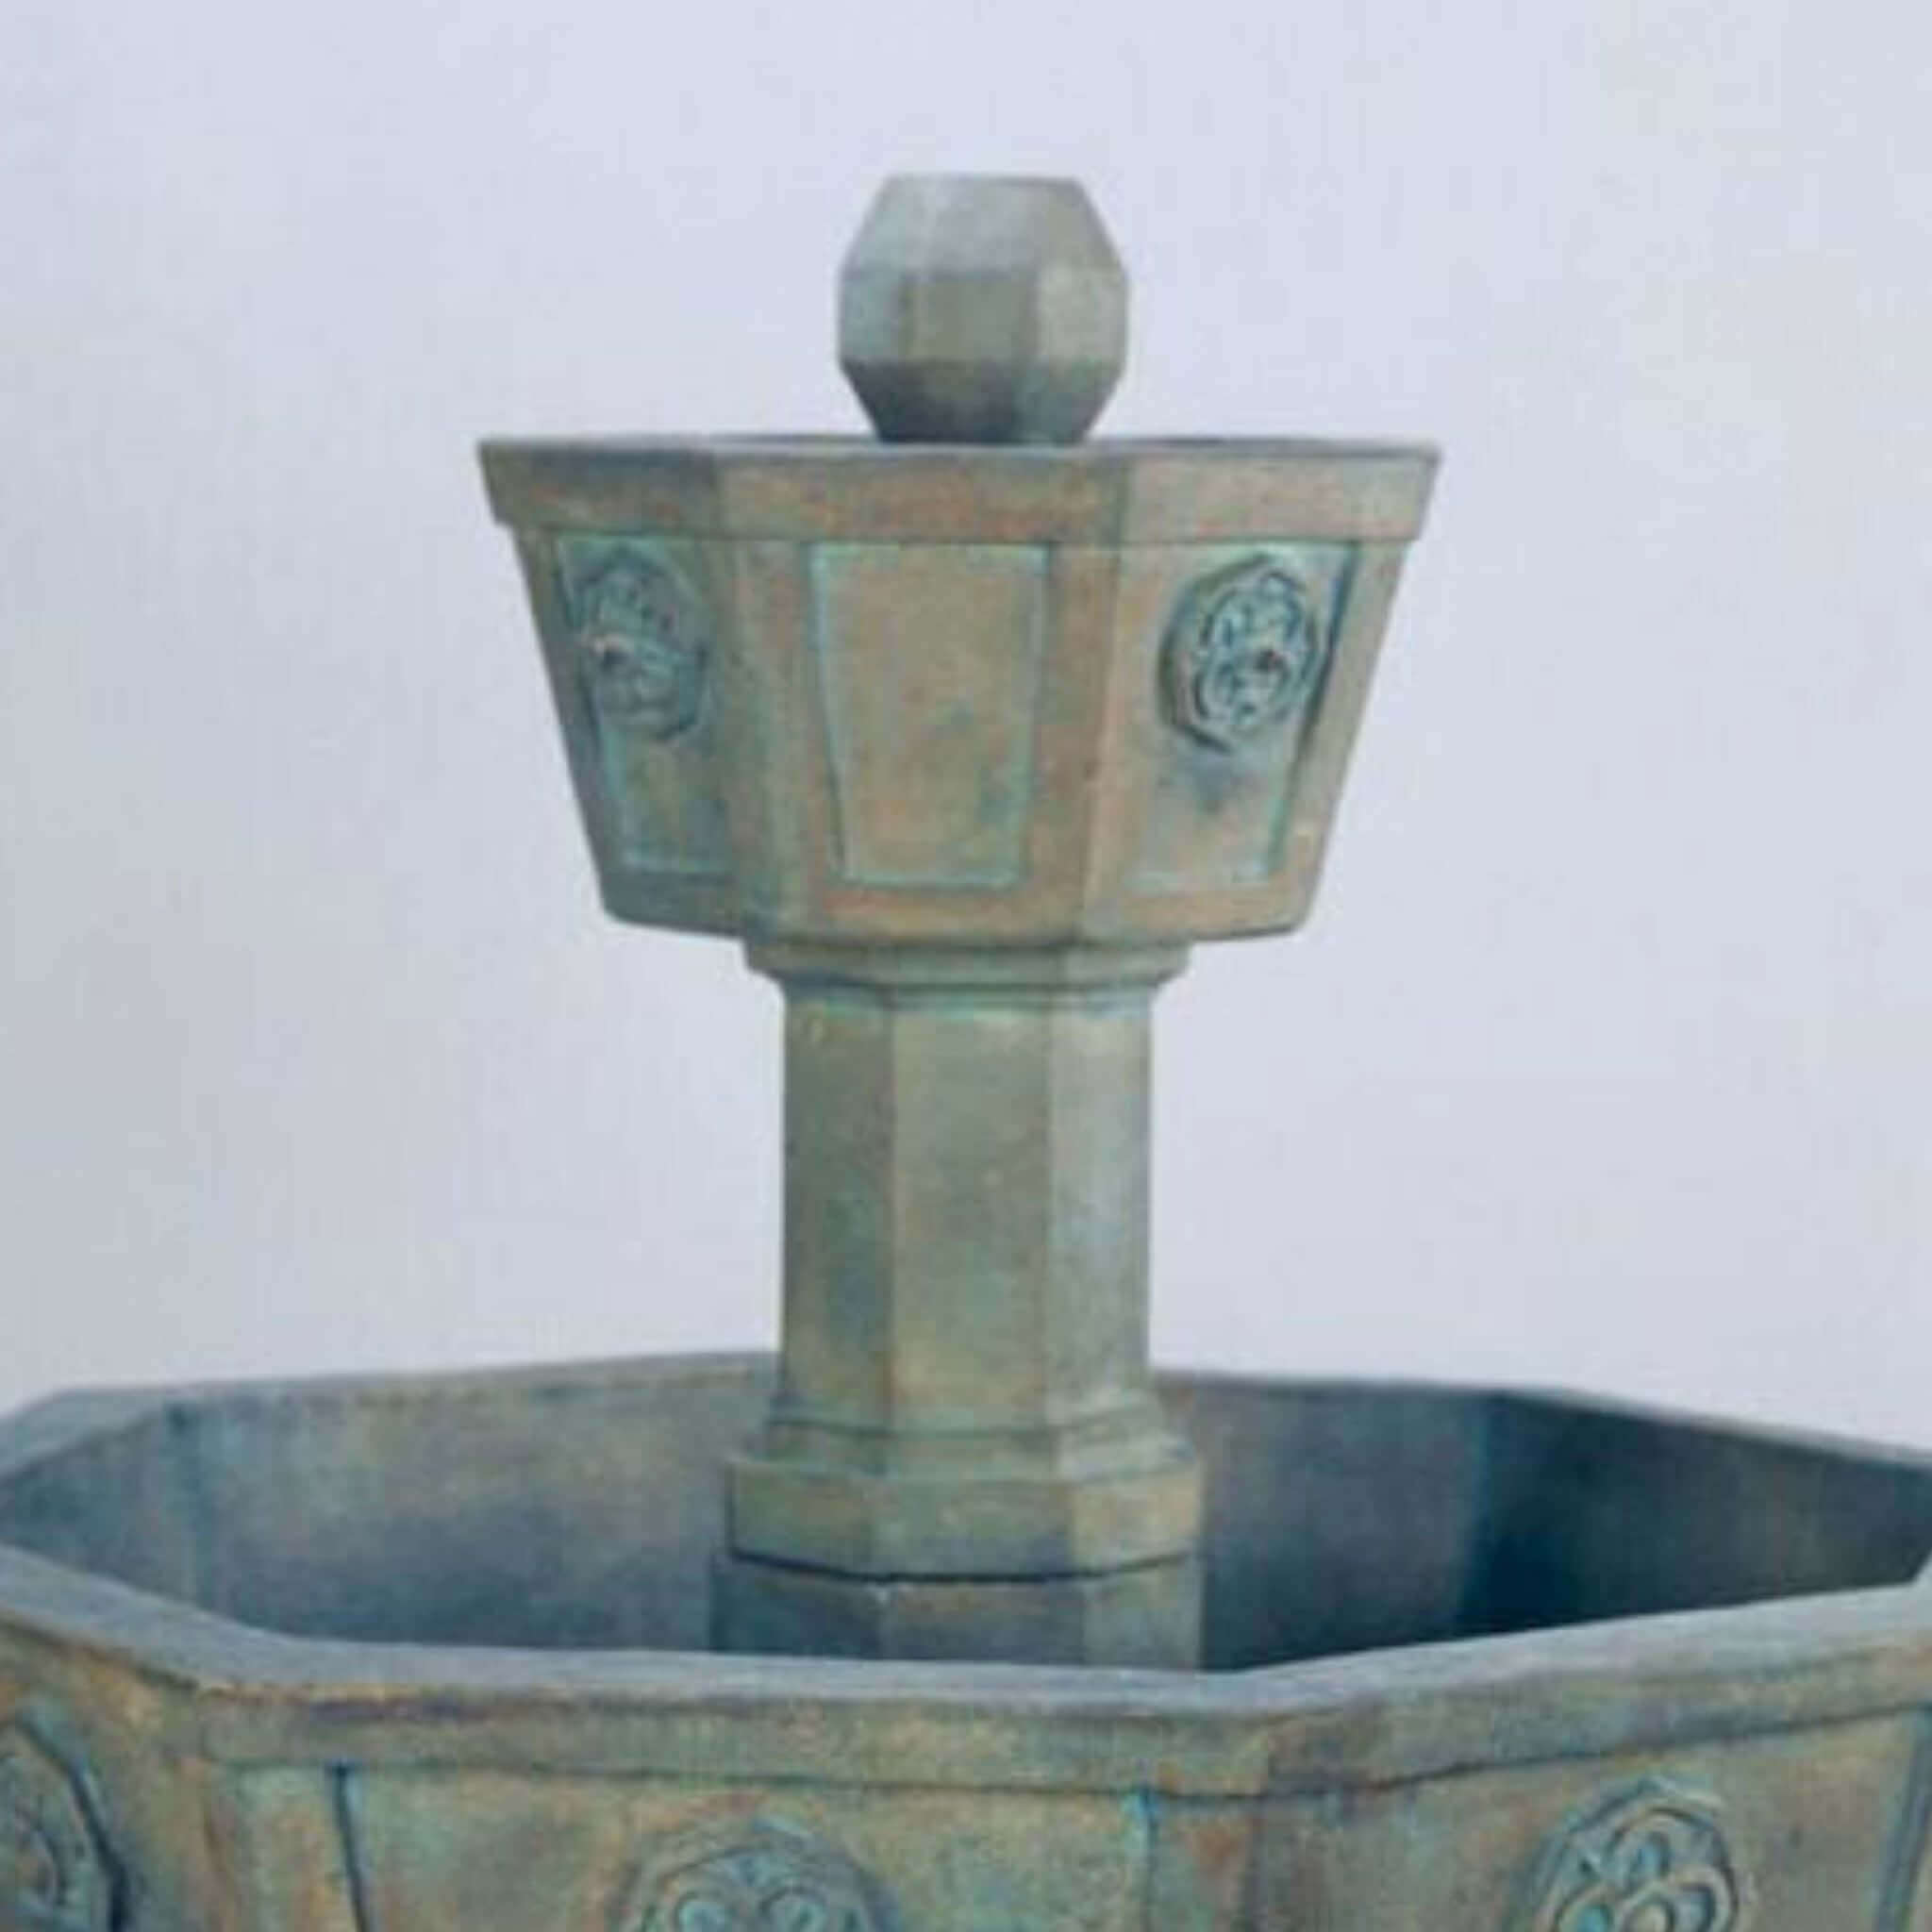 The Neogotico Concrete Fountain - Giannini #1071